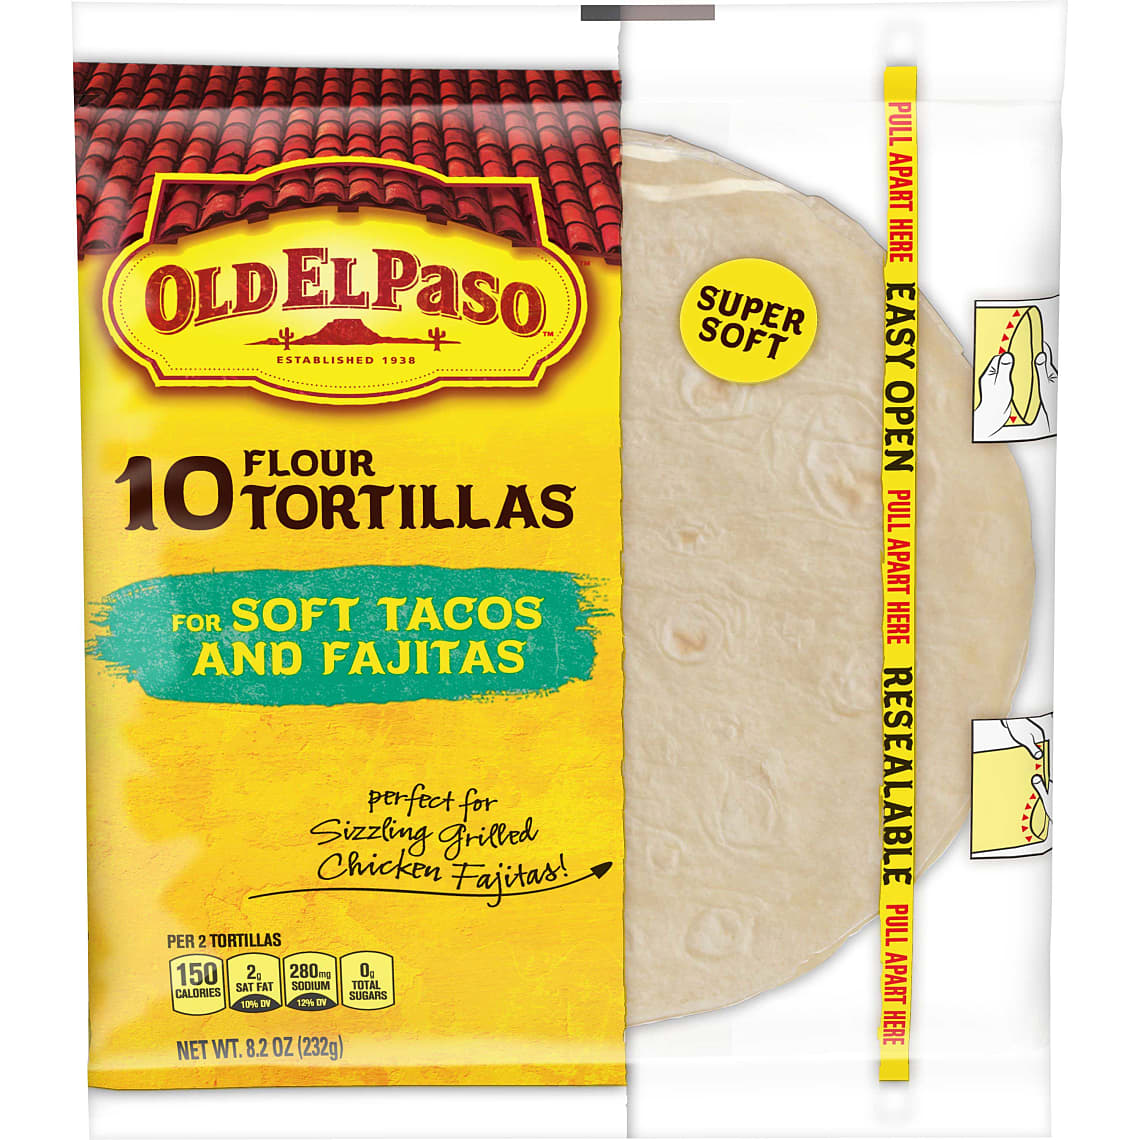 Old El Paso Flour Tortillas, Soft Tacos and Fajitas, 10 Count